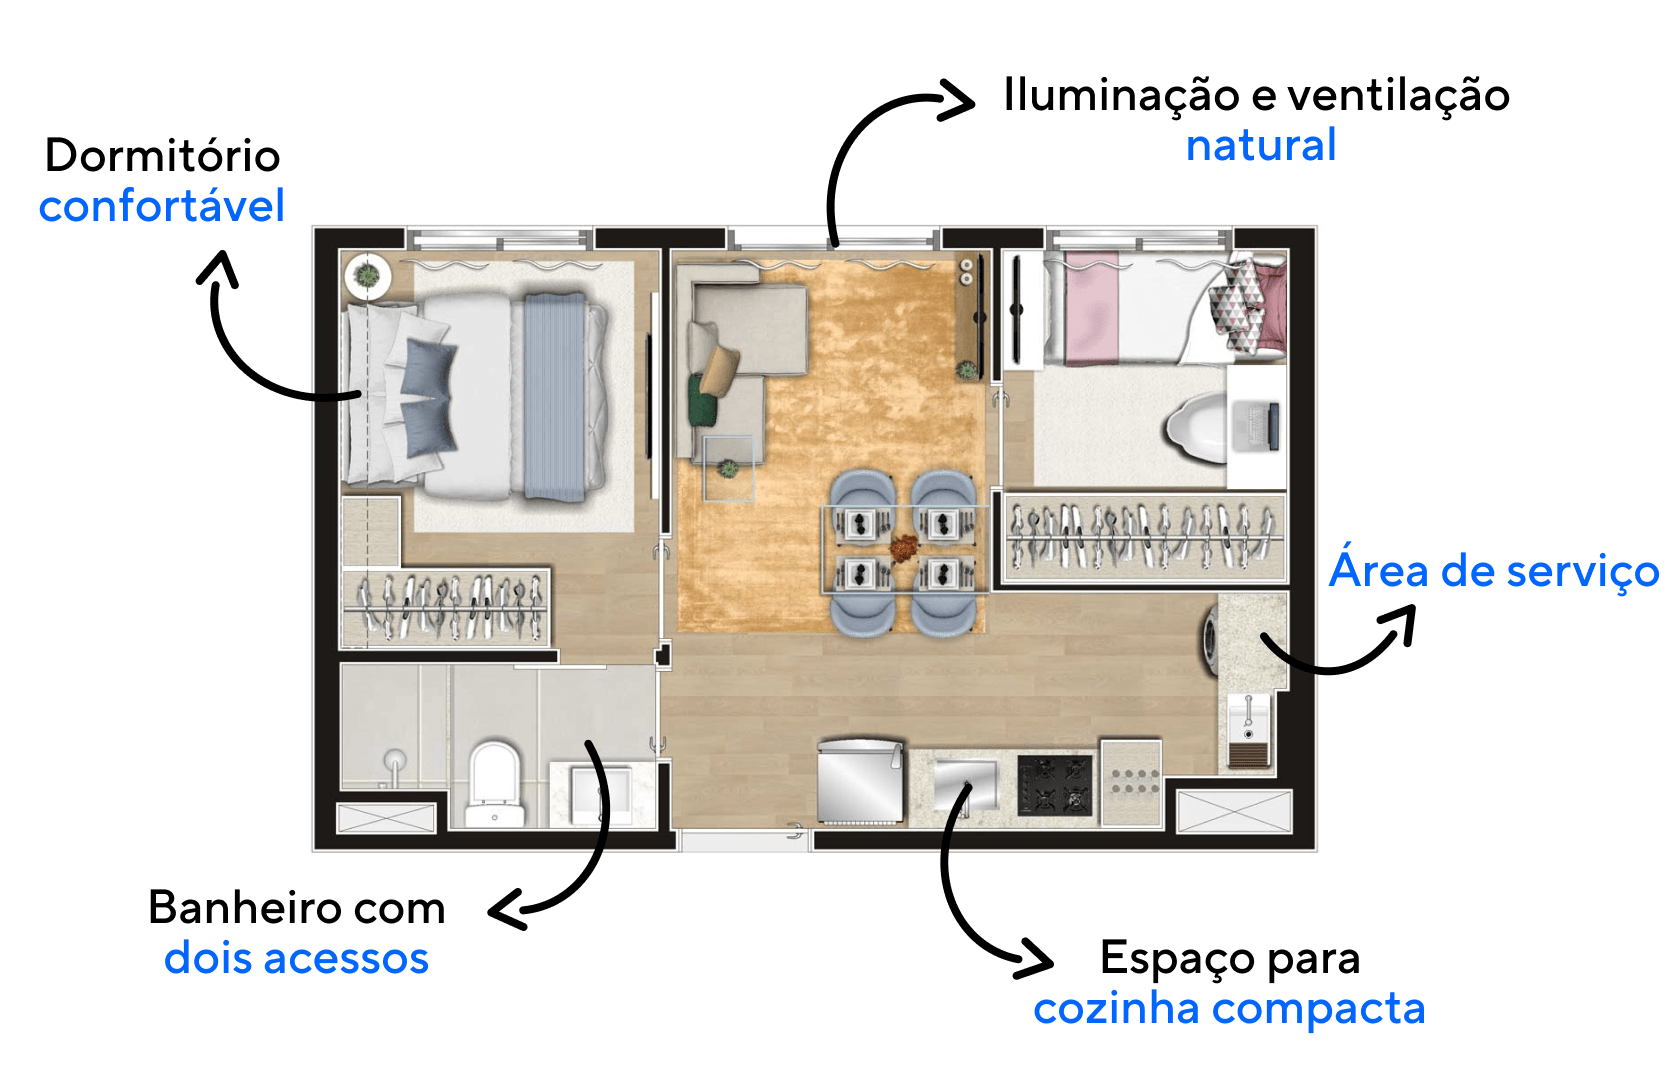 Planta do apartamento d 34 m² do Viva Benx Tatuapé com dois dormitórios e área social central.